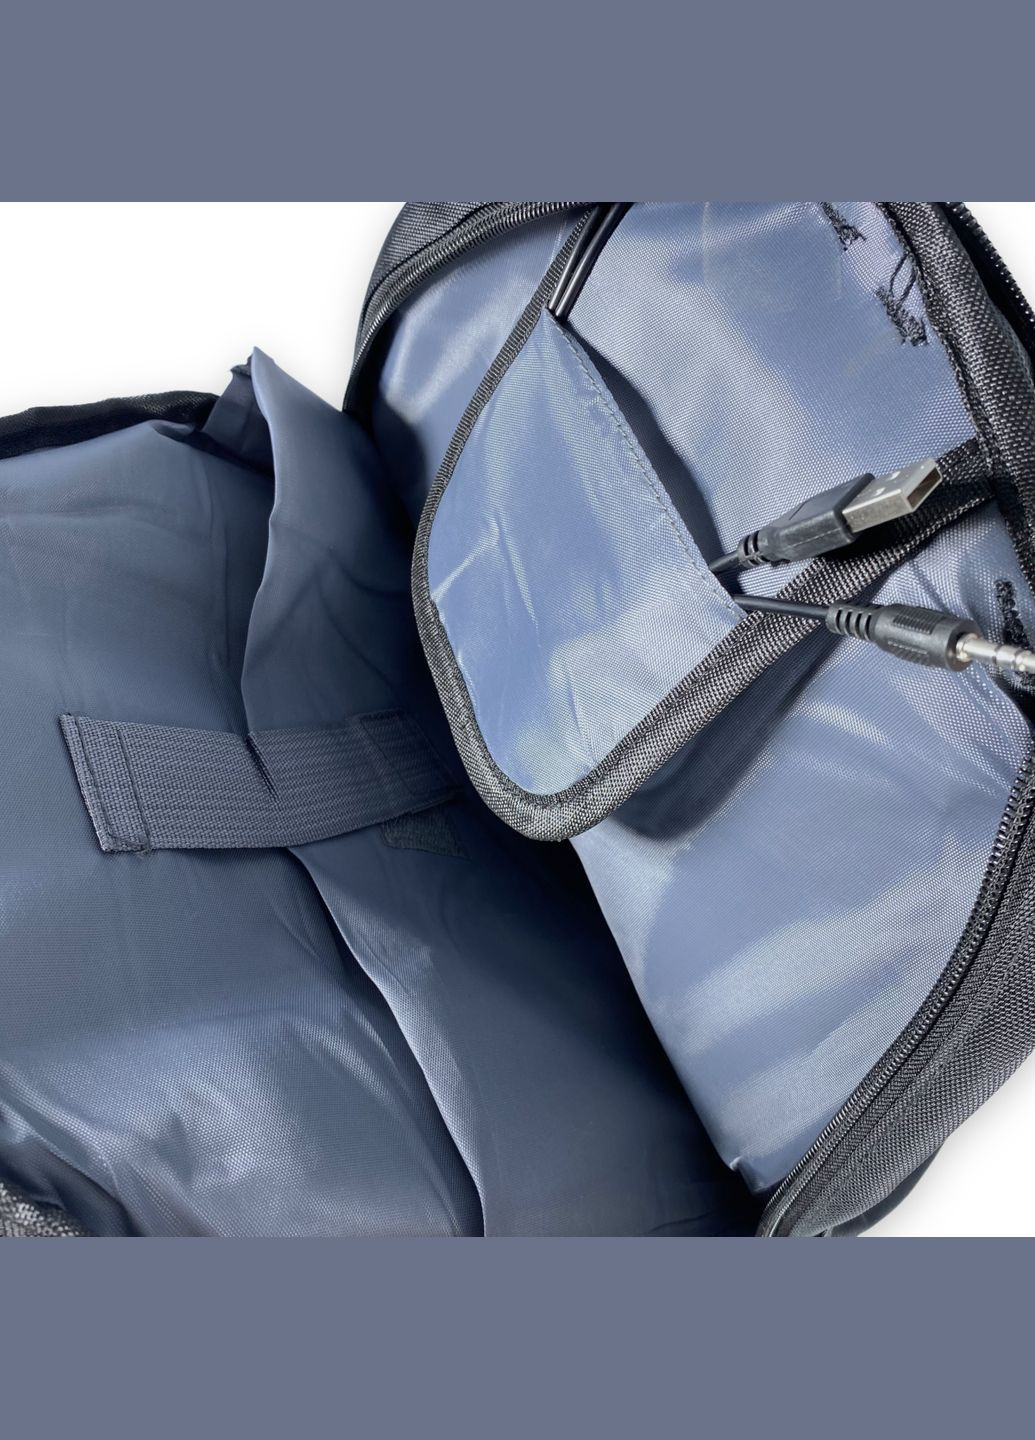 Міський рюкзак з чохлом від дощу 30 л, три відділення, USB розʼєм, розмір: 50*30*20 см, бородовий SWISSGEAR (284338097)